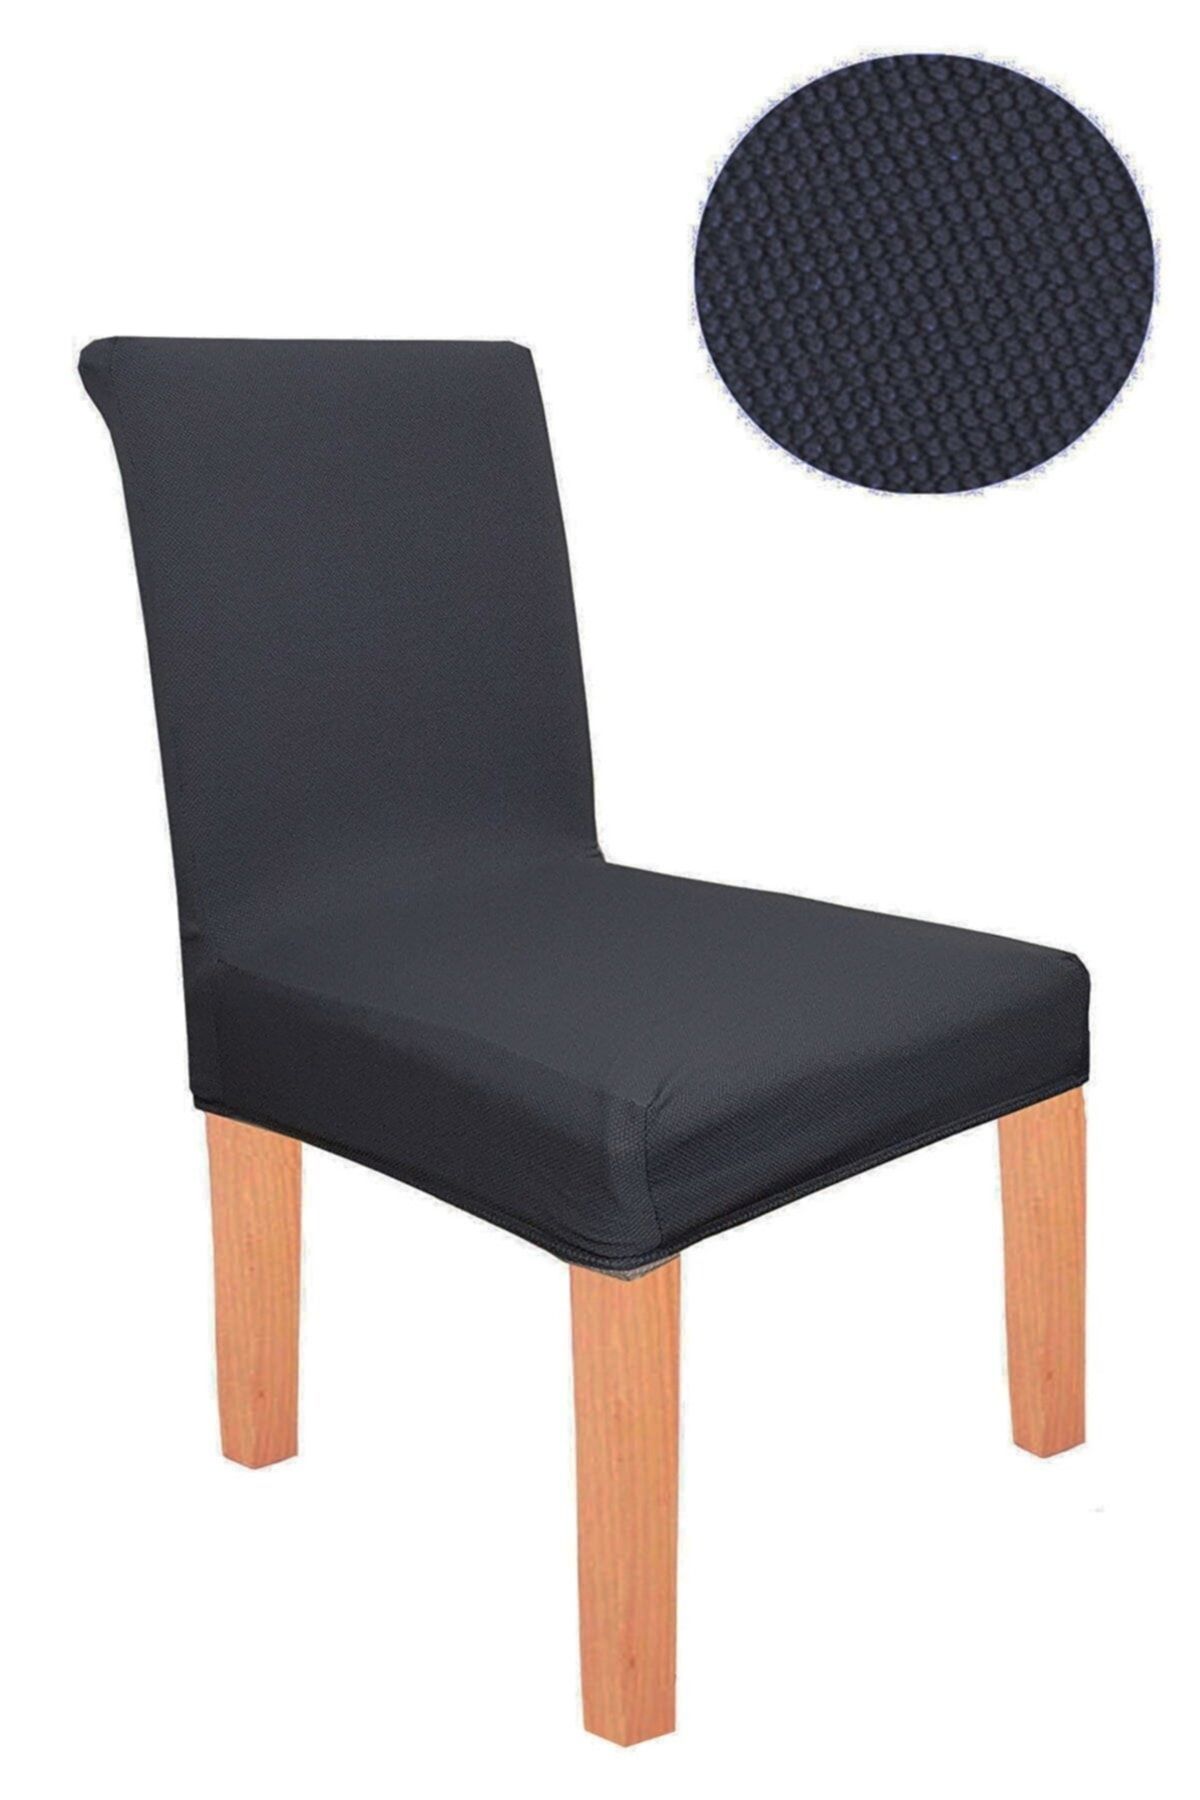 KARAHANLI Sandalye Kılıfı Siyah Yıkanabilir Lastikli Kadife Kumaş Sandalye Örtüsü